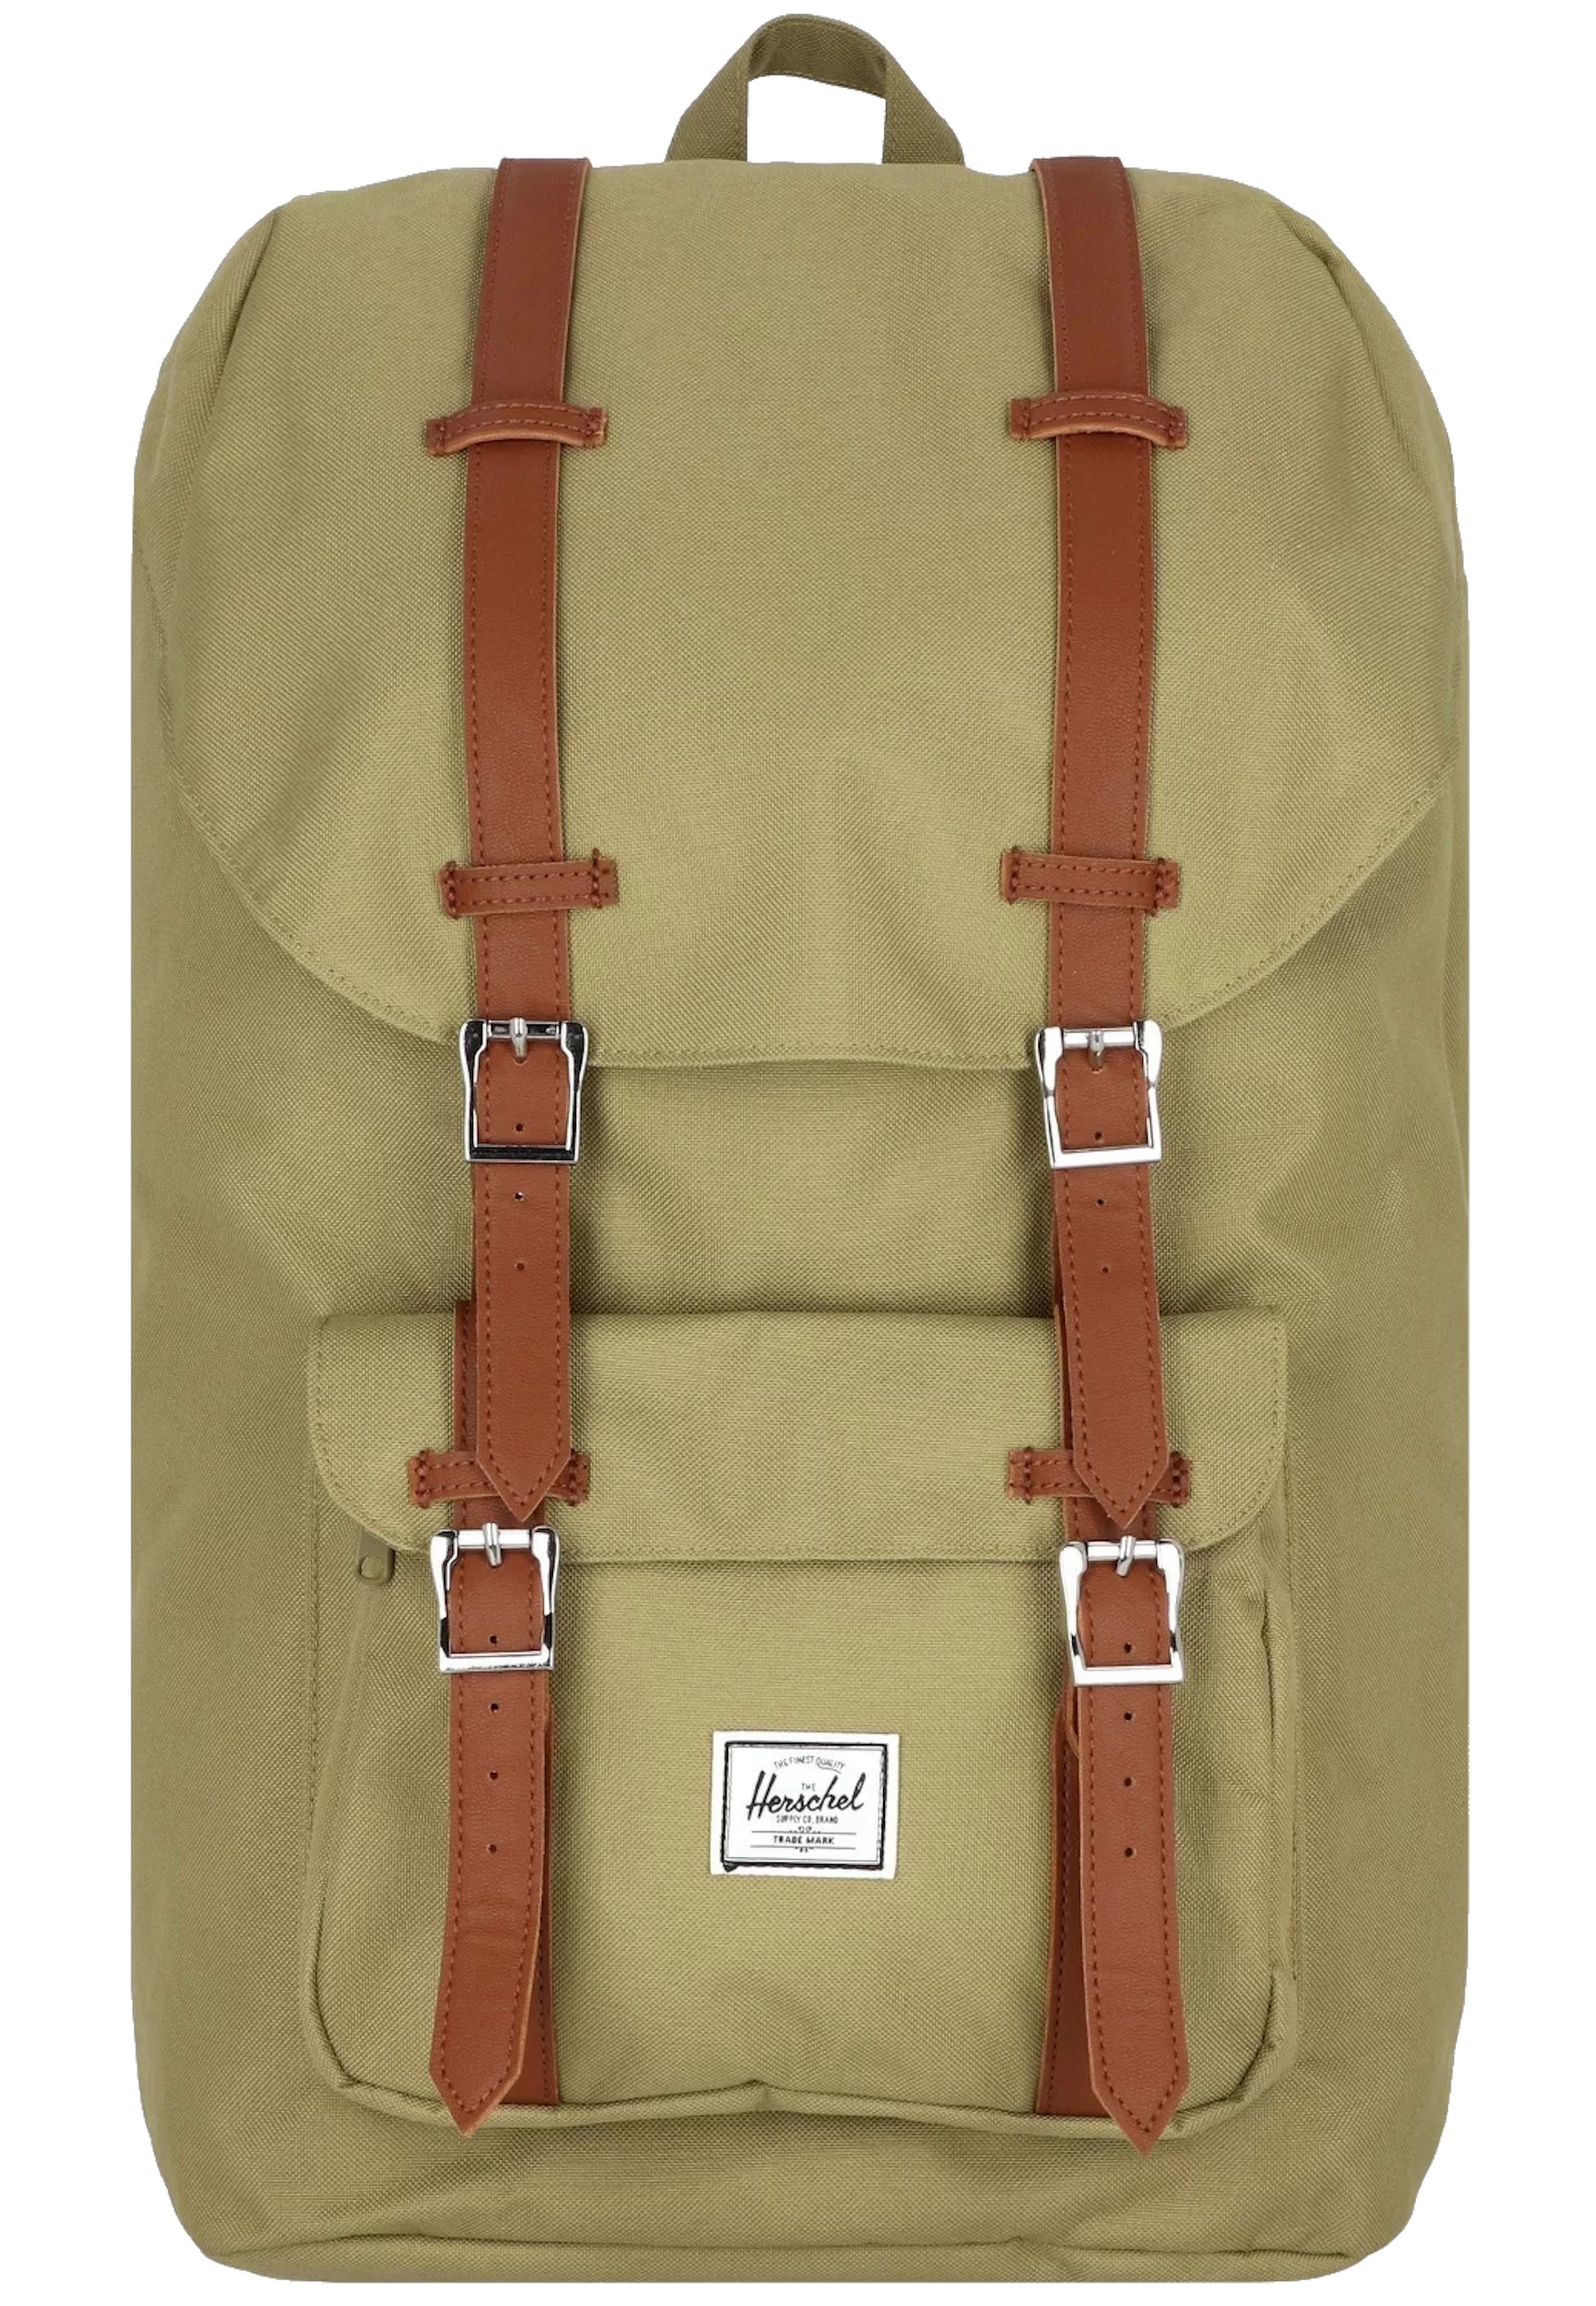 Рюкзак Herschel 'Little America', зеленый поставка рюкзаков среднего размера little america рюкзак цвета морской волны herschel